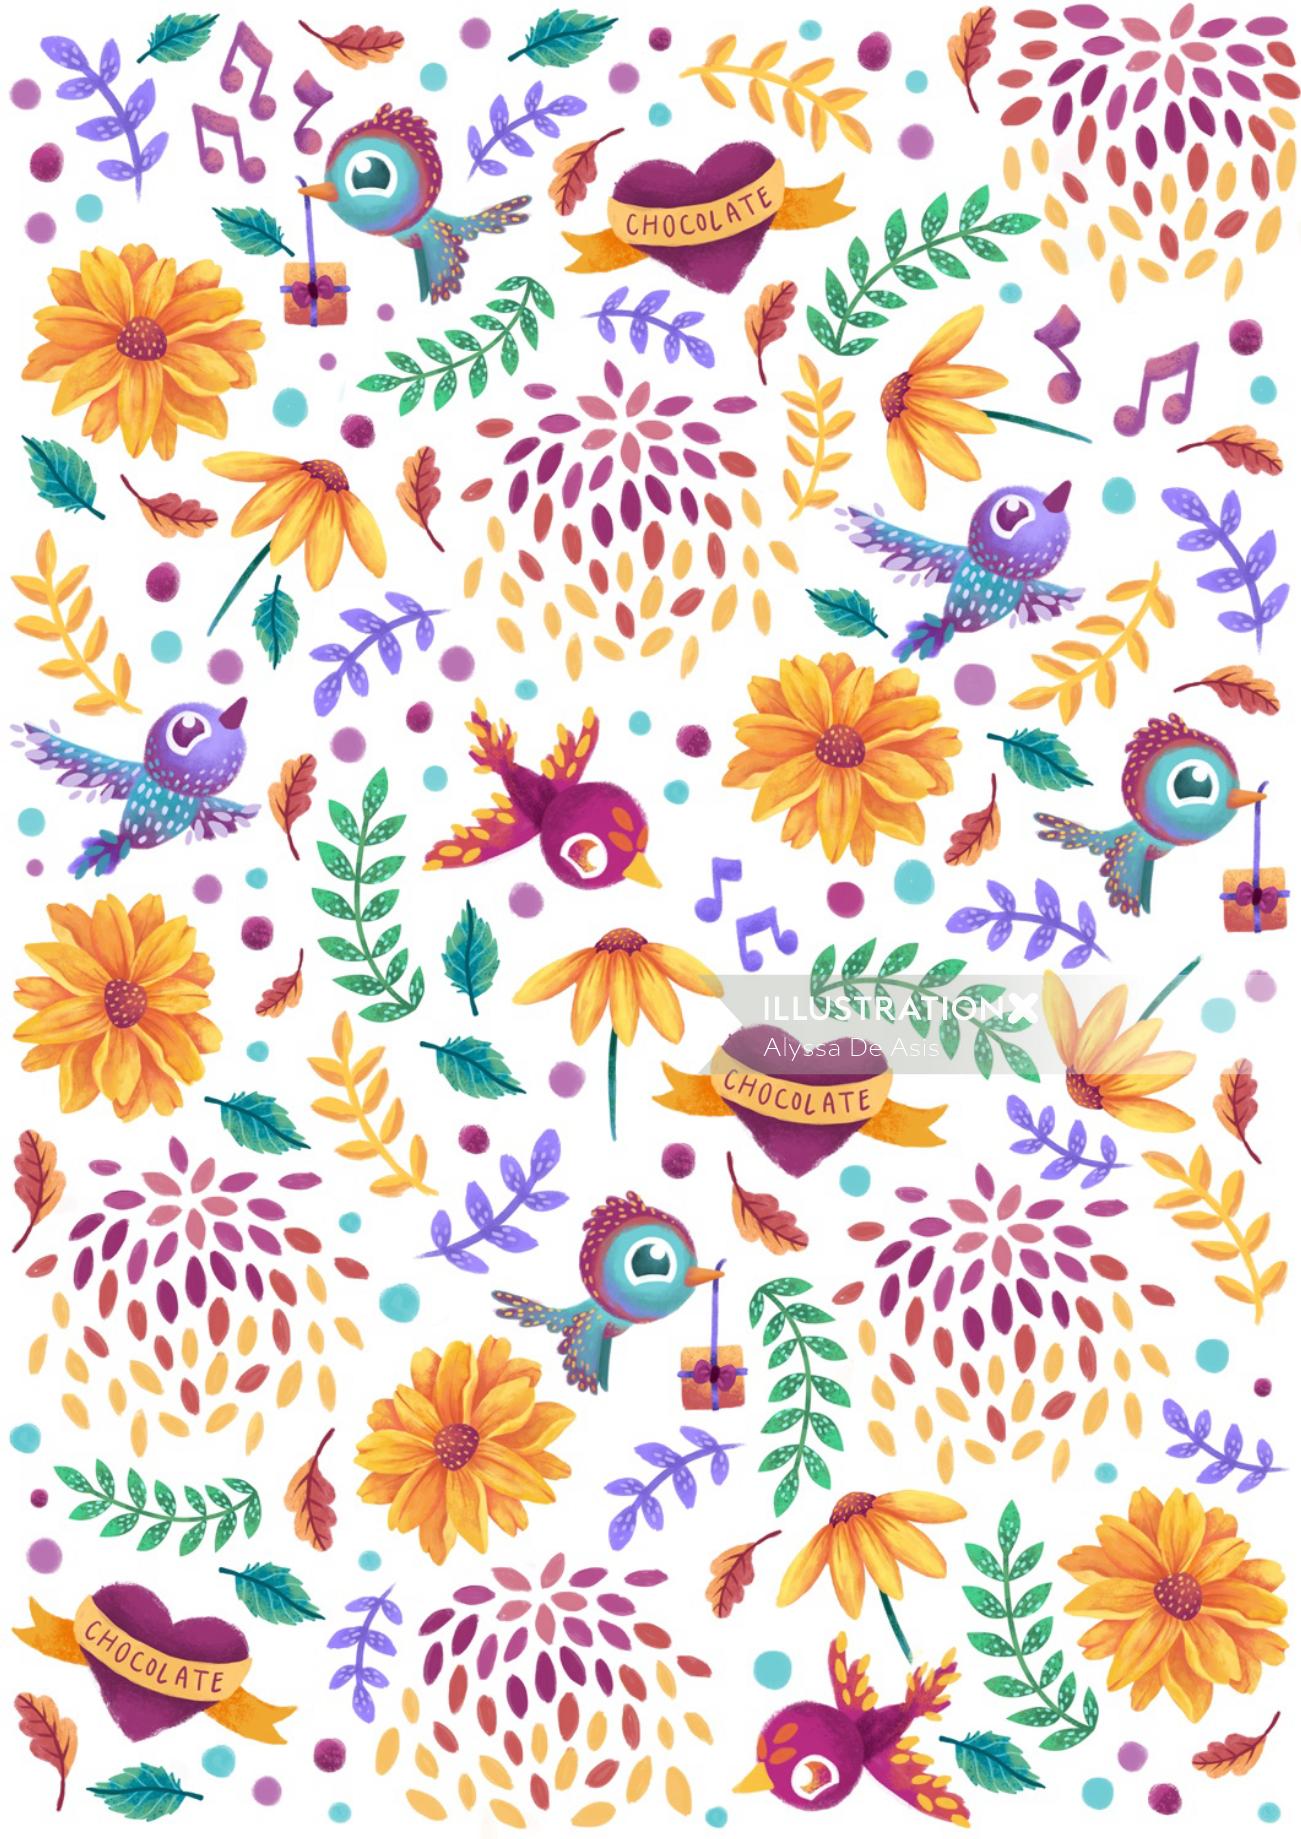 Love birds pattern illustration 